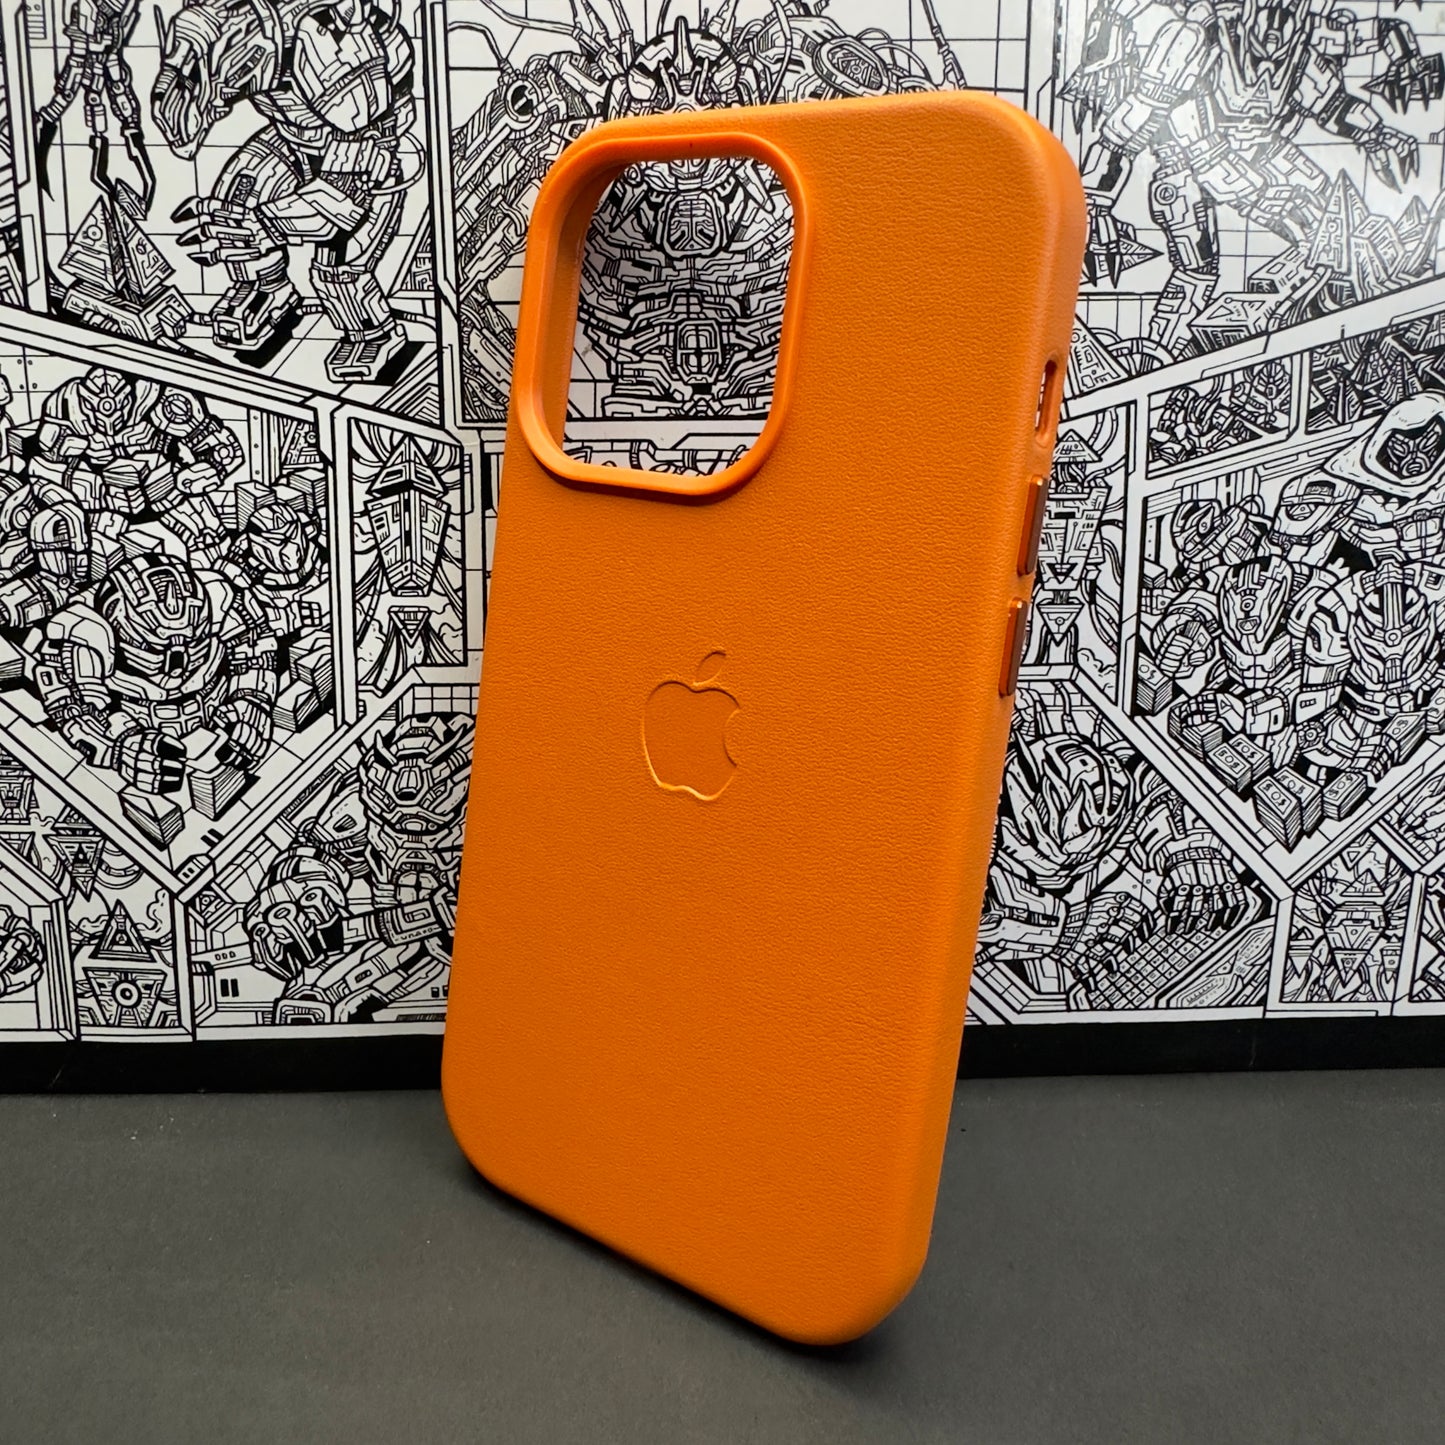 Magsafe leather case | Orange | iPhone 14 pro